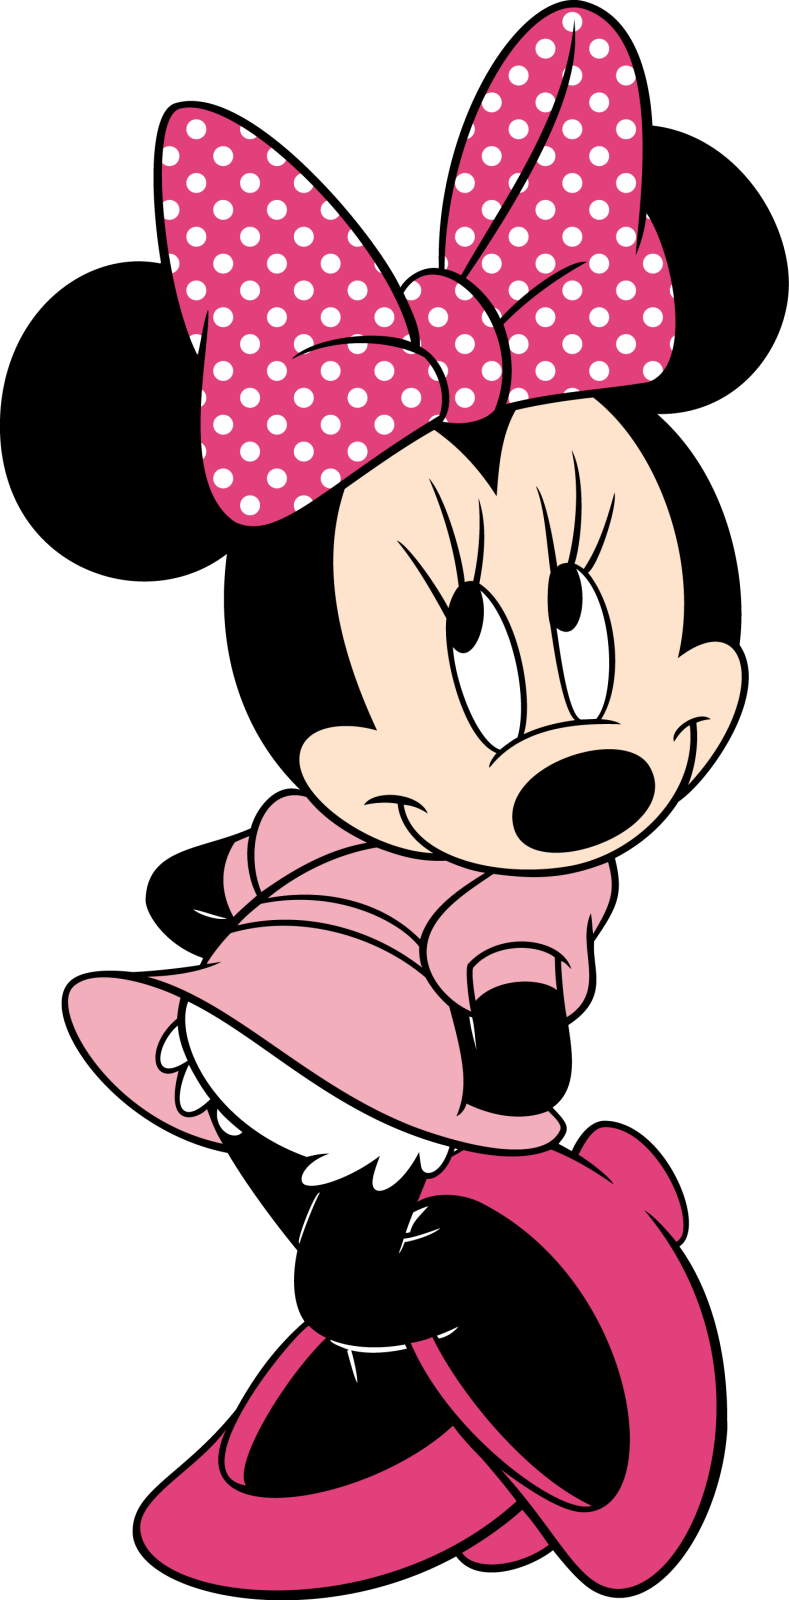 Minnie mouse png images. Descargar im genes gratis